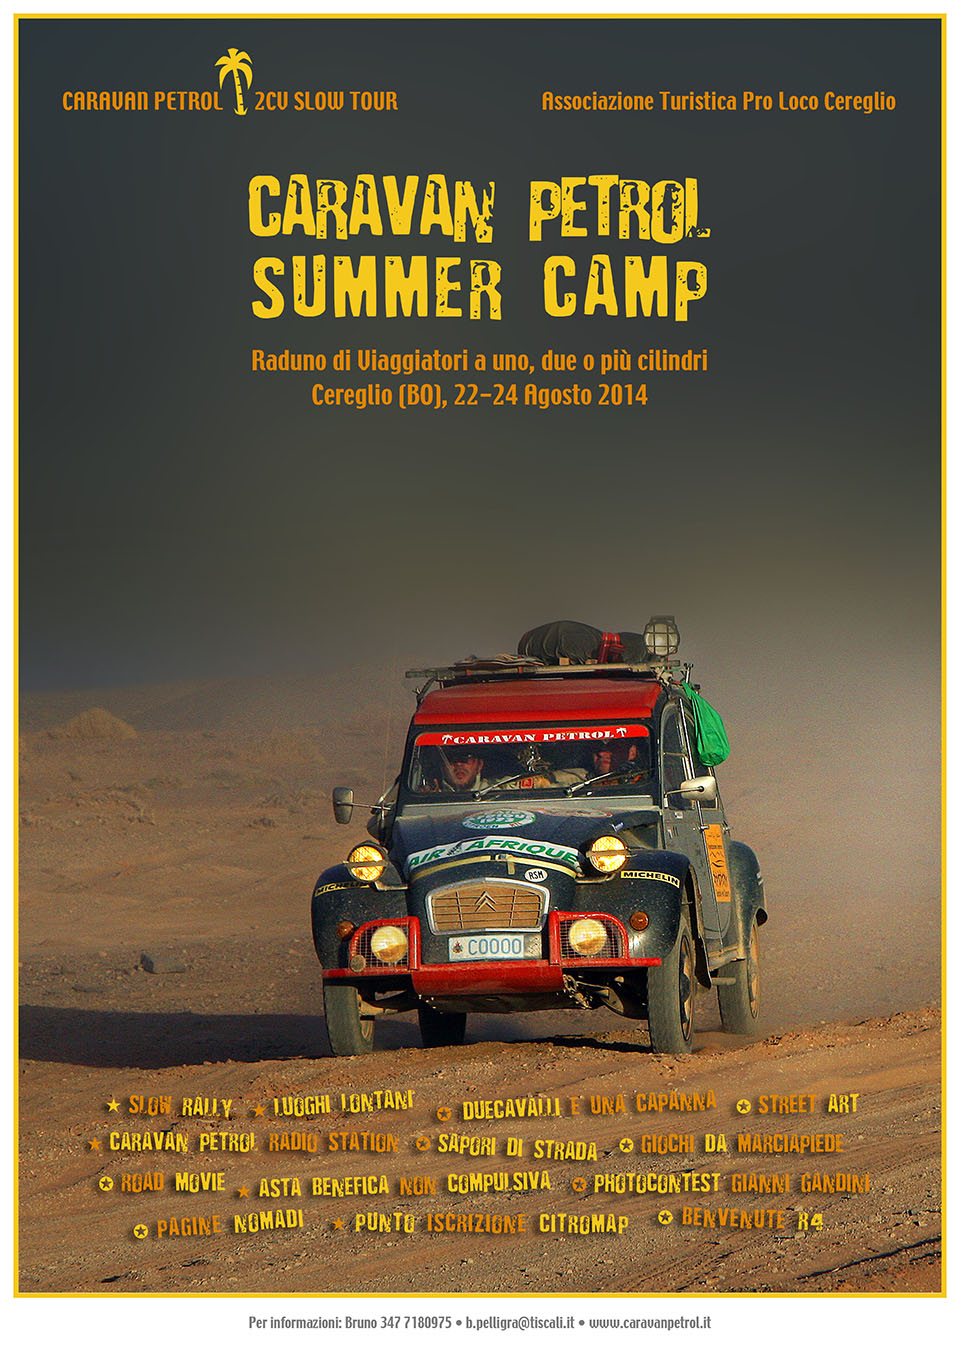 Caravan Petrol Summer Camp, Cereglio (BO) • 22-24 Agosto 2014